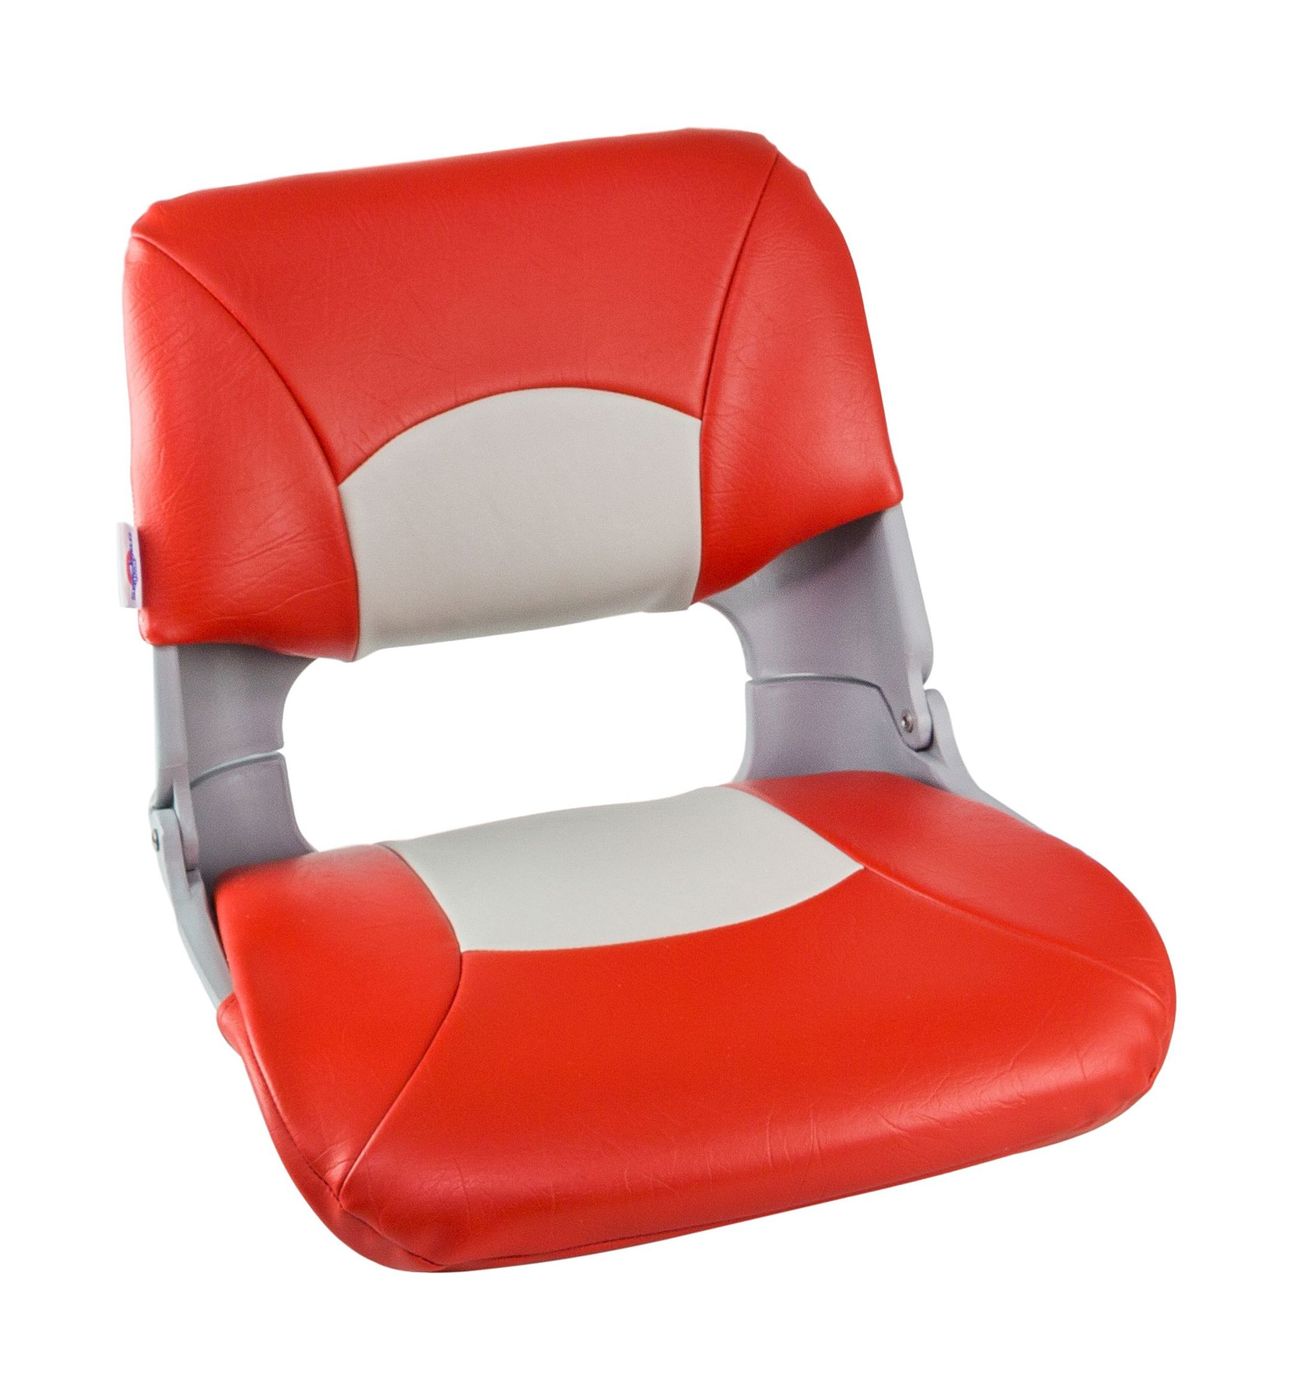 Кресло складное мягкое SKIPPER, цвет серый/красный 1061018 сиденье мягкое bass boat seat серый красный 75132gcr